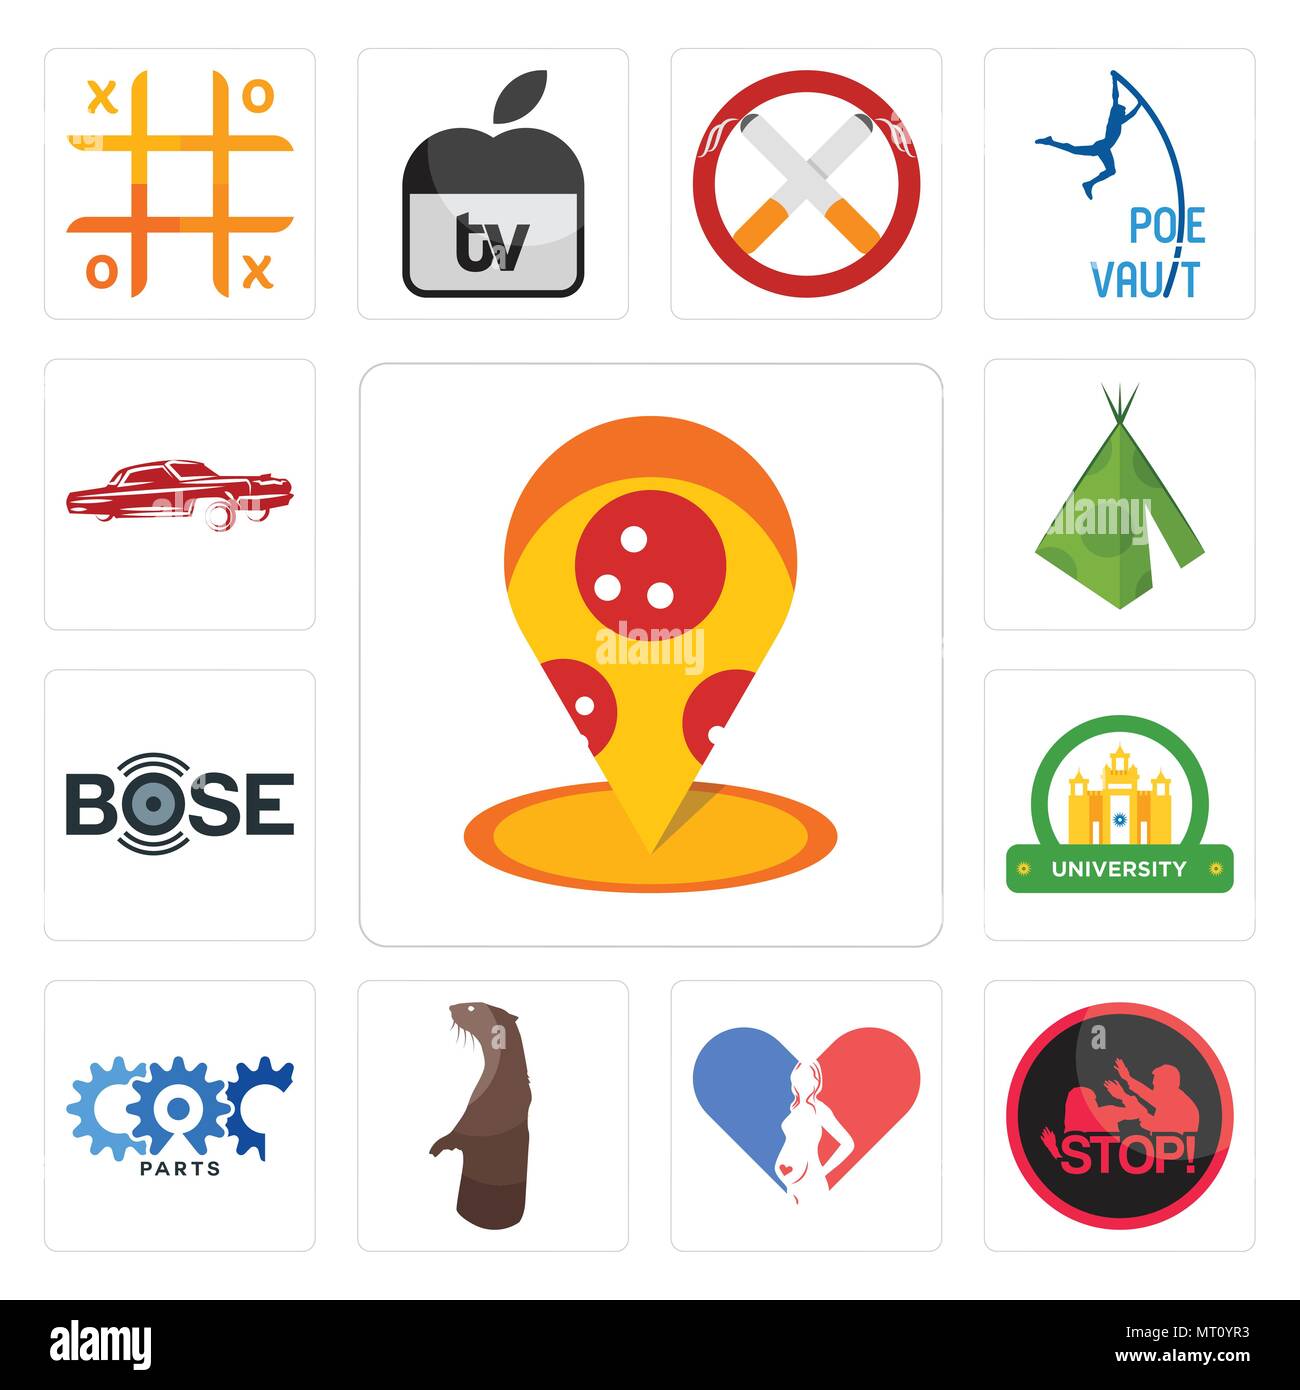 Bose logo icon Banque d'images vectorielles - Alamy